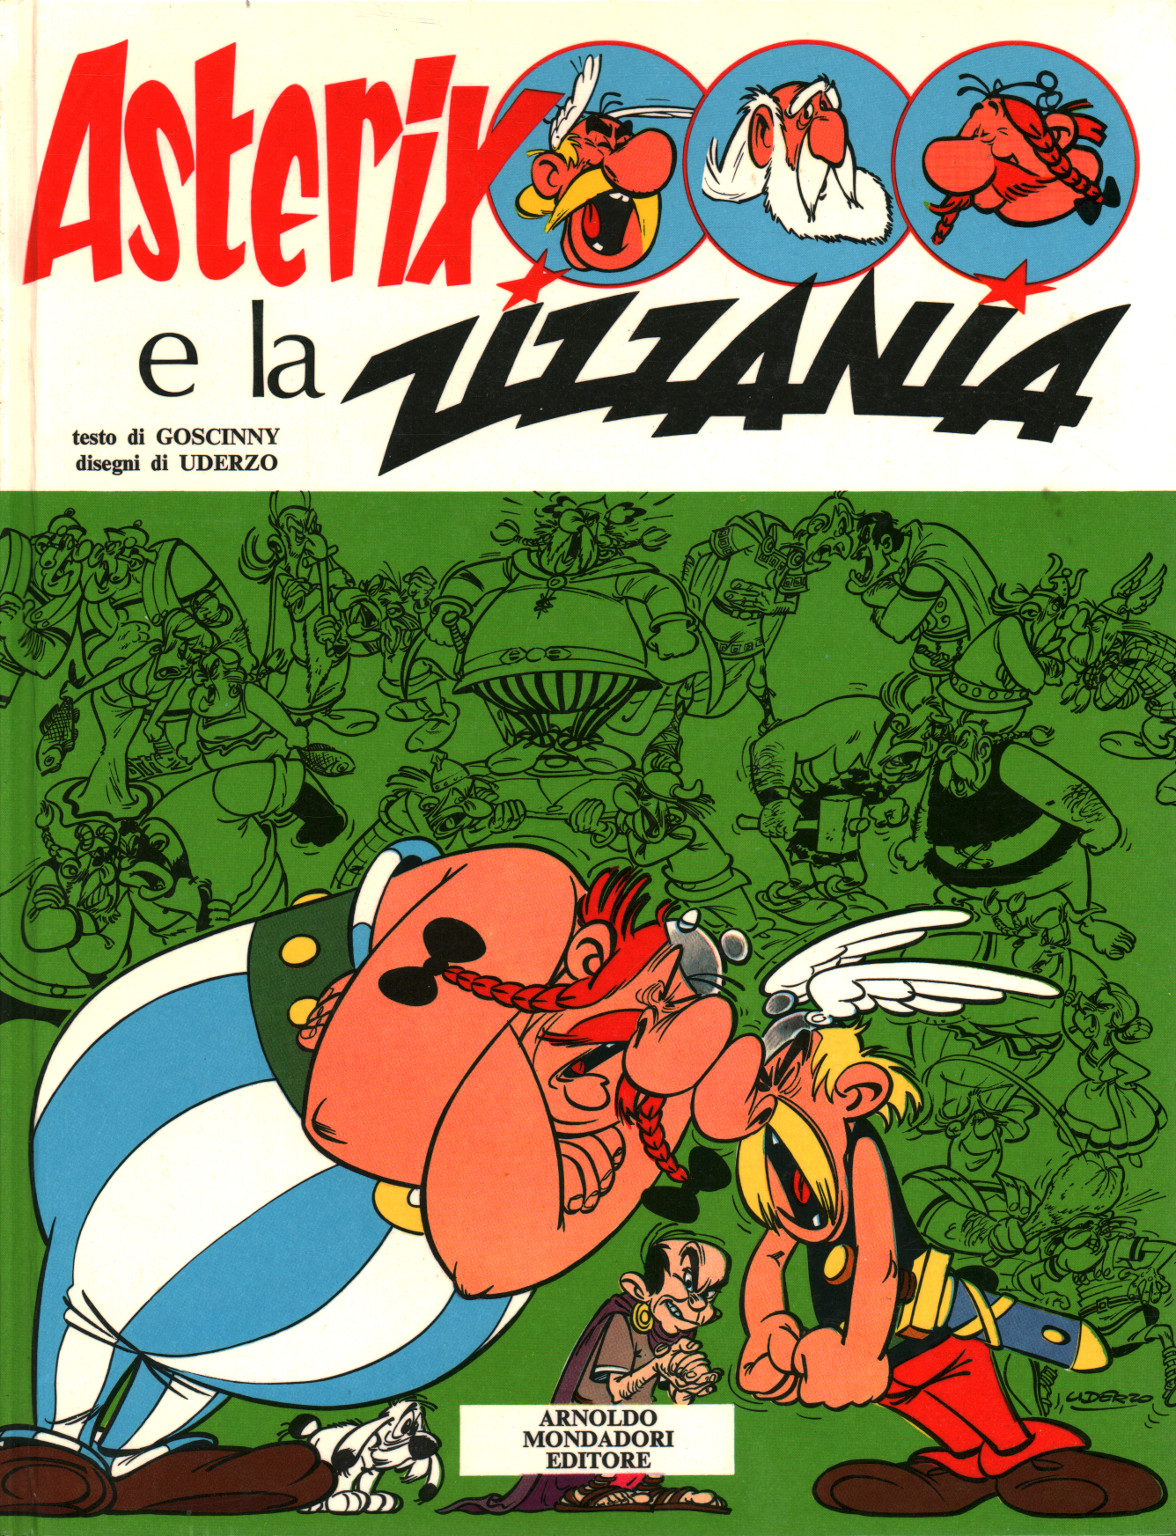 Asterix e la zizzania, s.a.